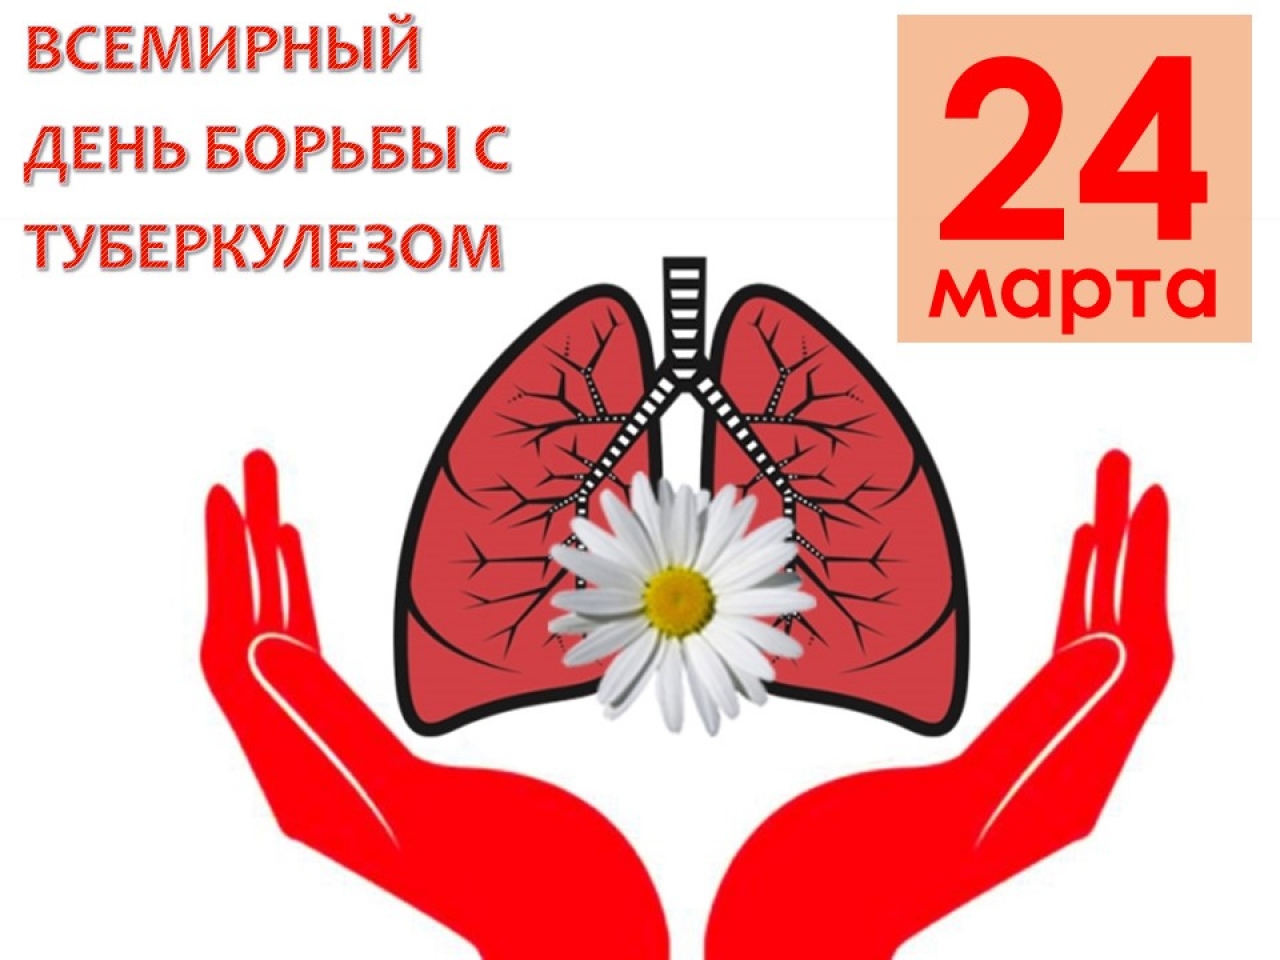 24 марта - Всемирный день борьбы против туберкулеза